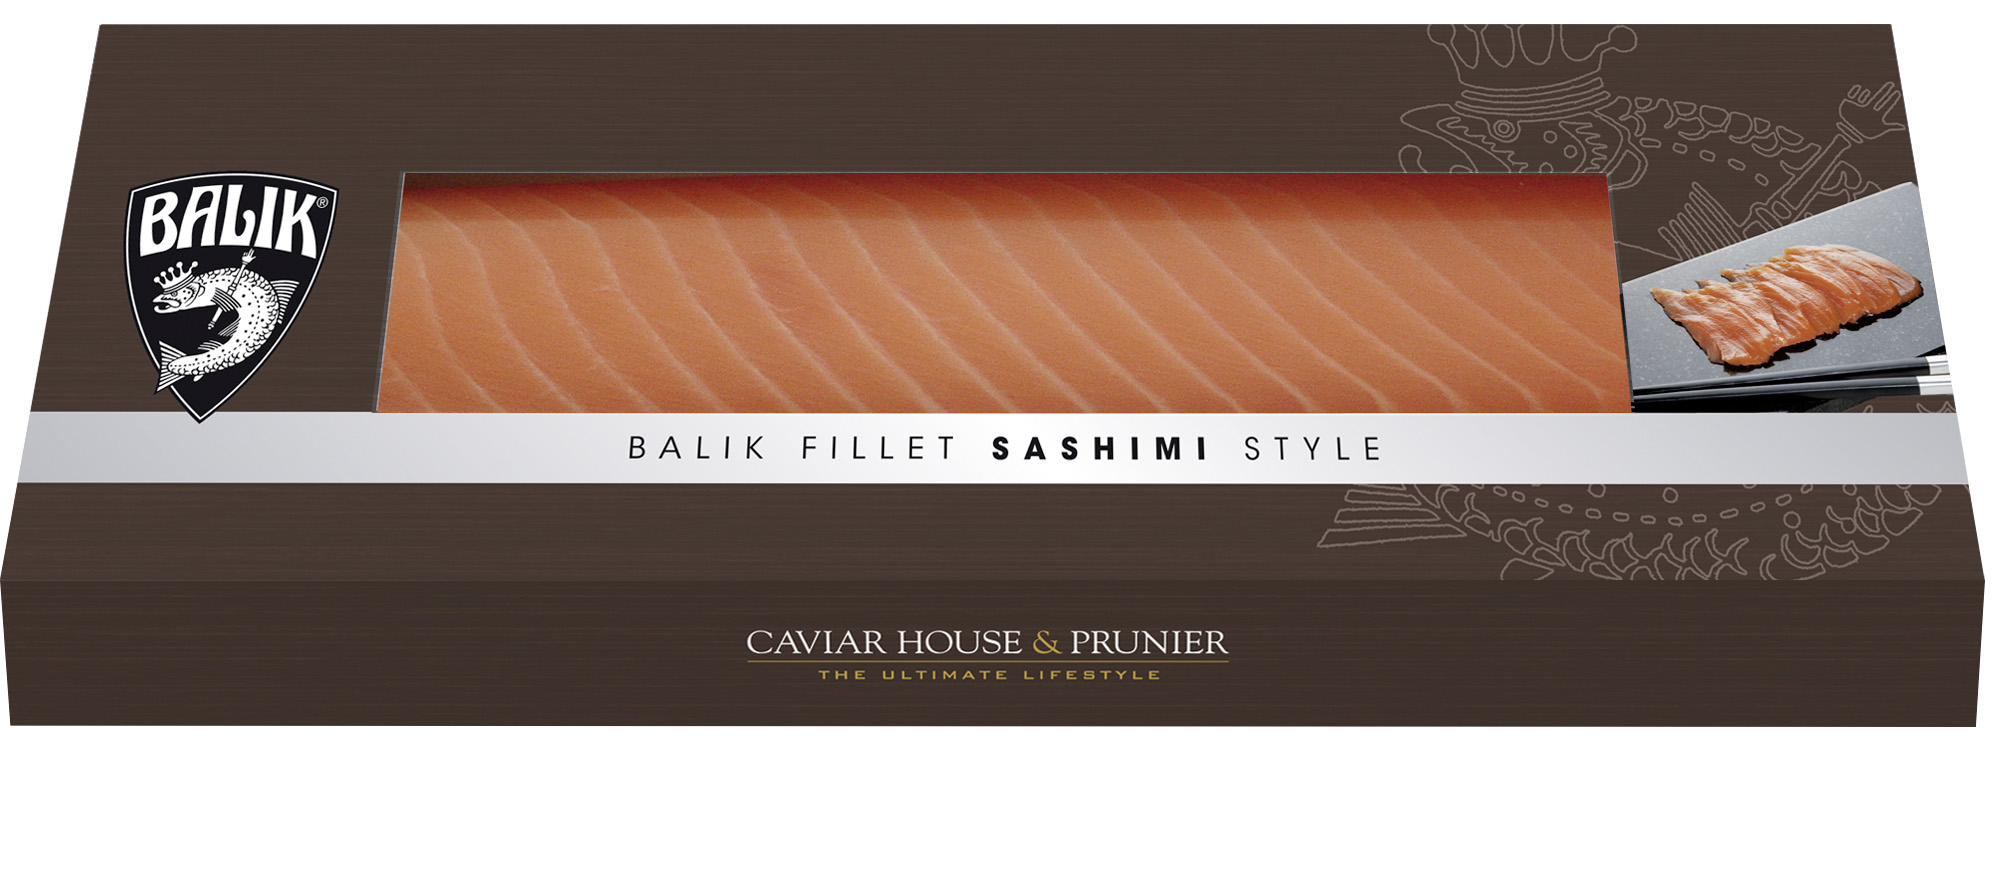 Balik Fillet Sashimi Style, 320 Gramm